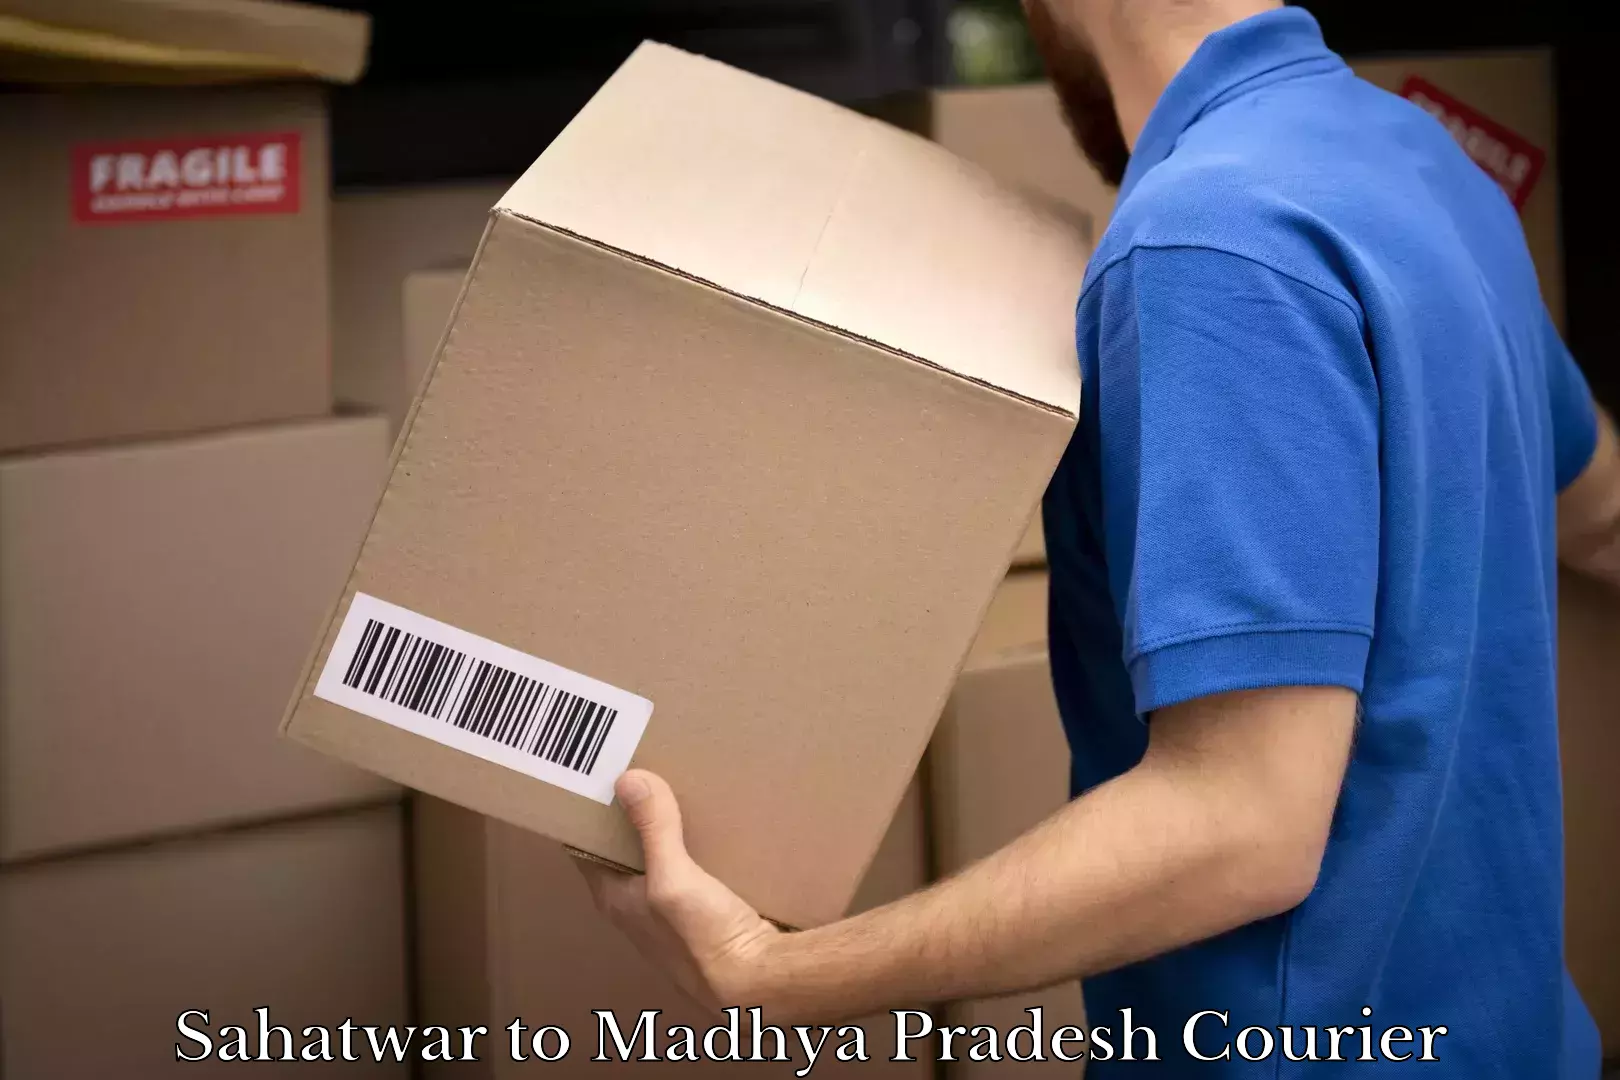 Express package handling Sahatwar to Madhya Pradesh